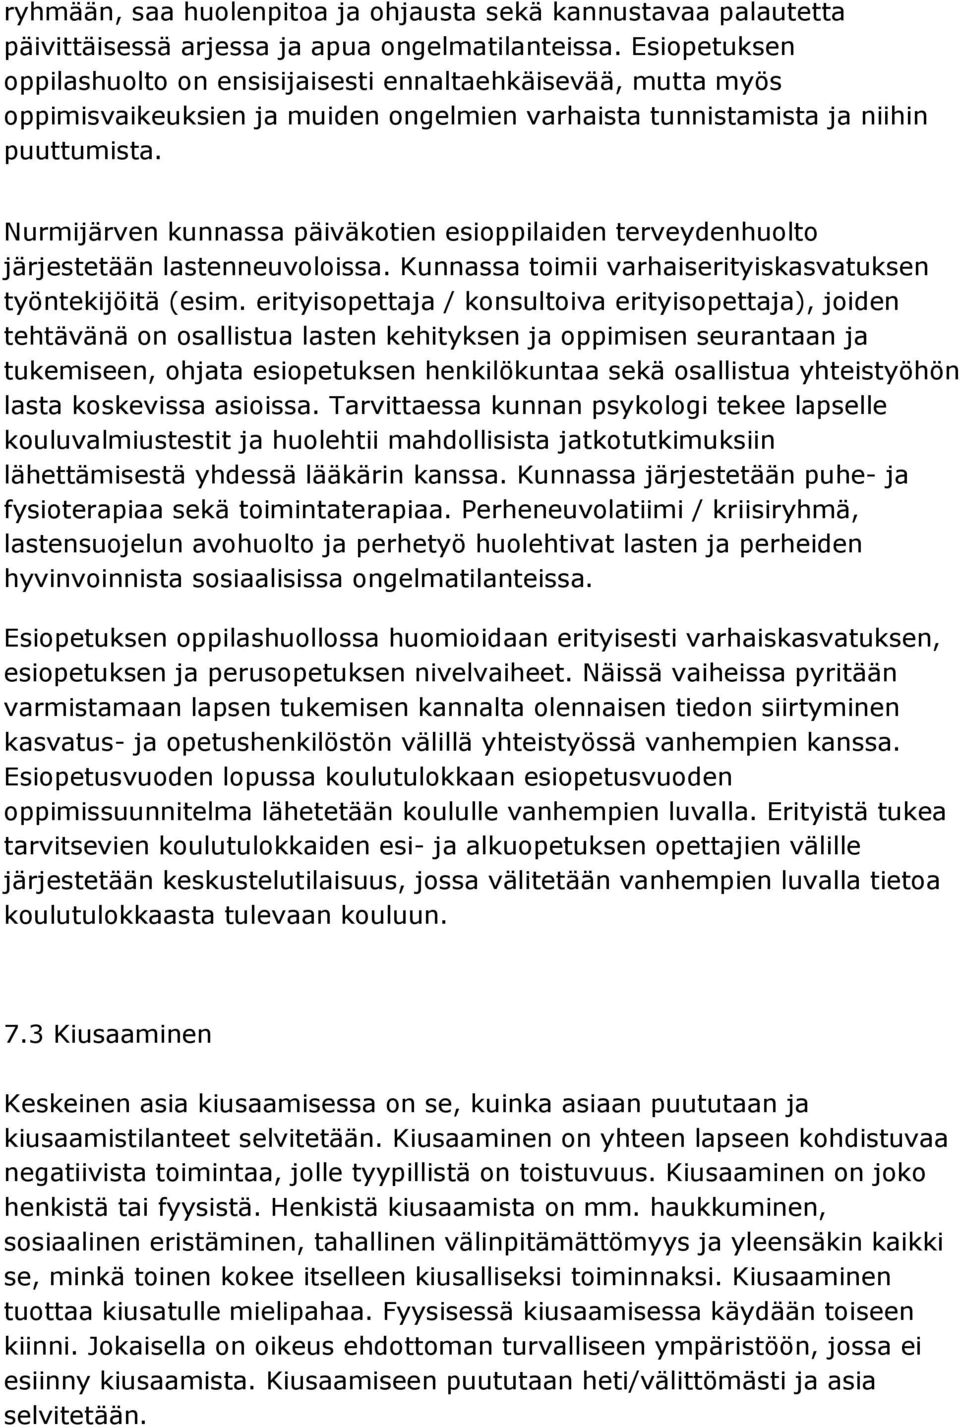 Nurmijärven kunnassa päiväkotien esioppilaiden terveydenhuolto järjestetään lastenneuvoloissa. Kunnassa toimii varhaiserityiskasvatuksen työntekijöitä (esim.